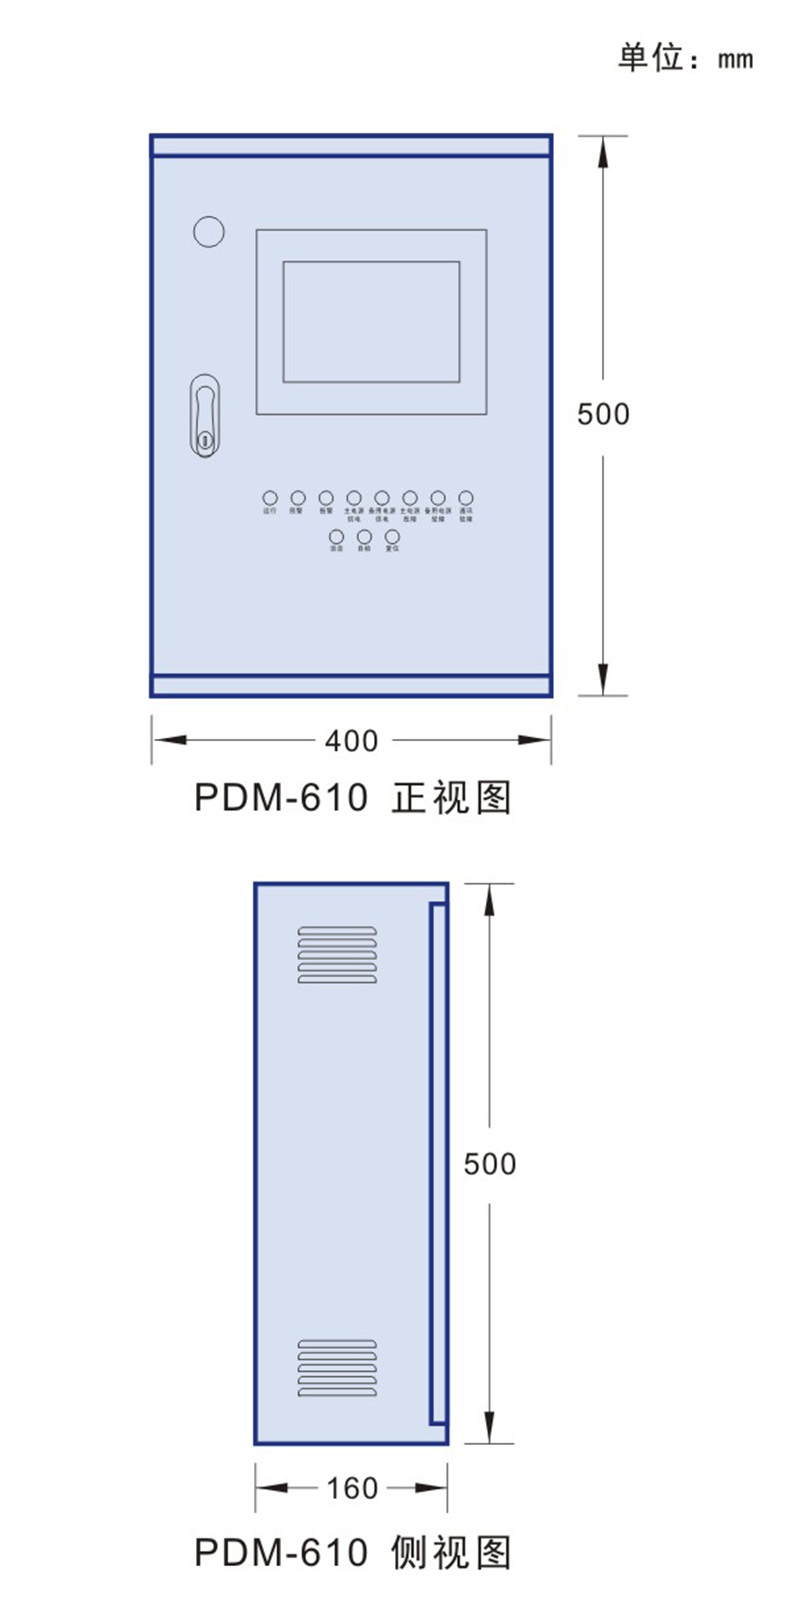 02 电气火灾监控系统 PDM-610 尺寸.jpg